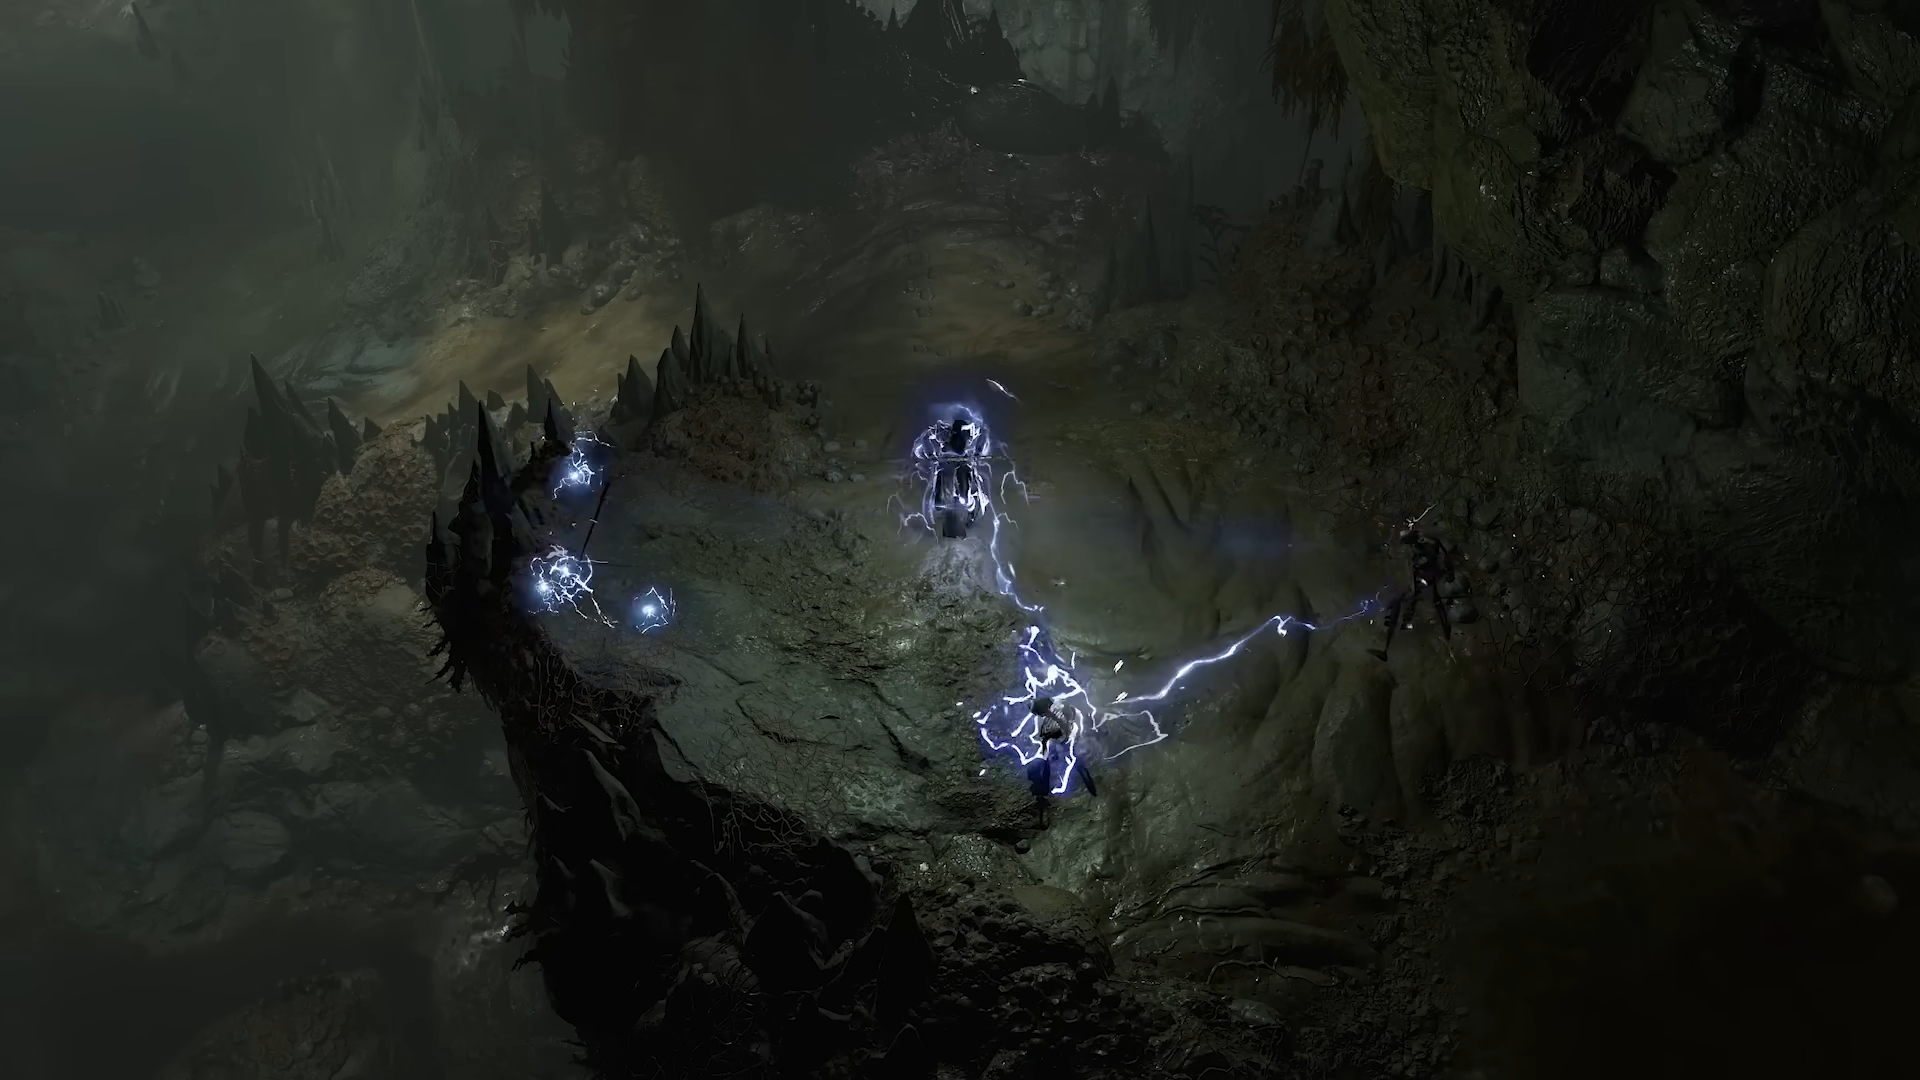 A sorcerer shooting lightning at skeletons.